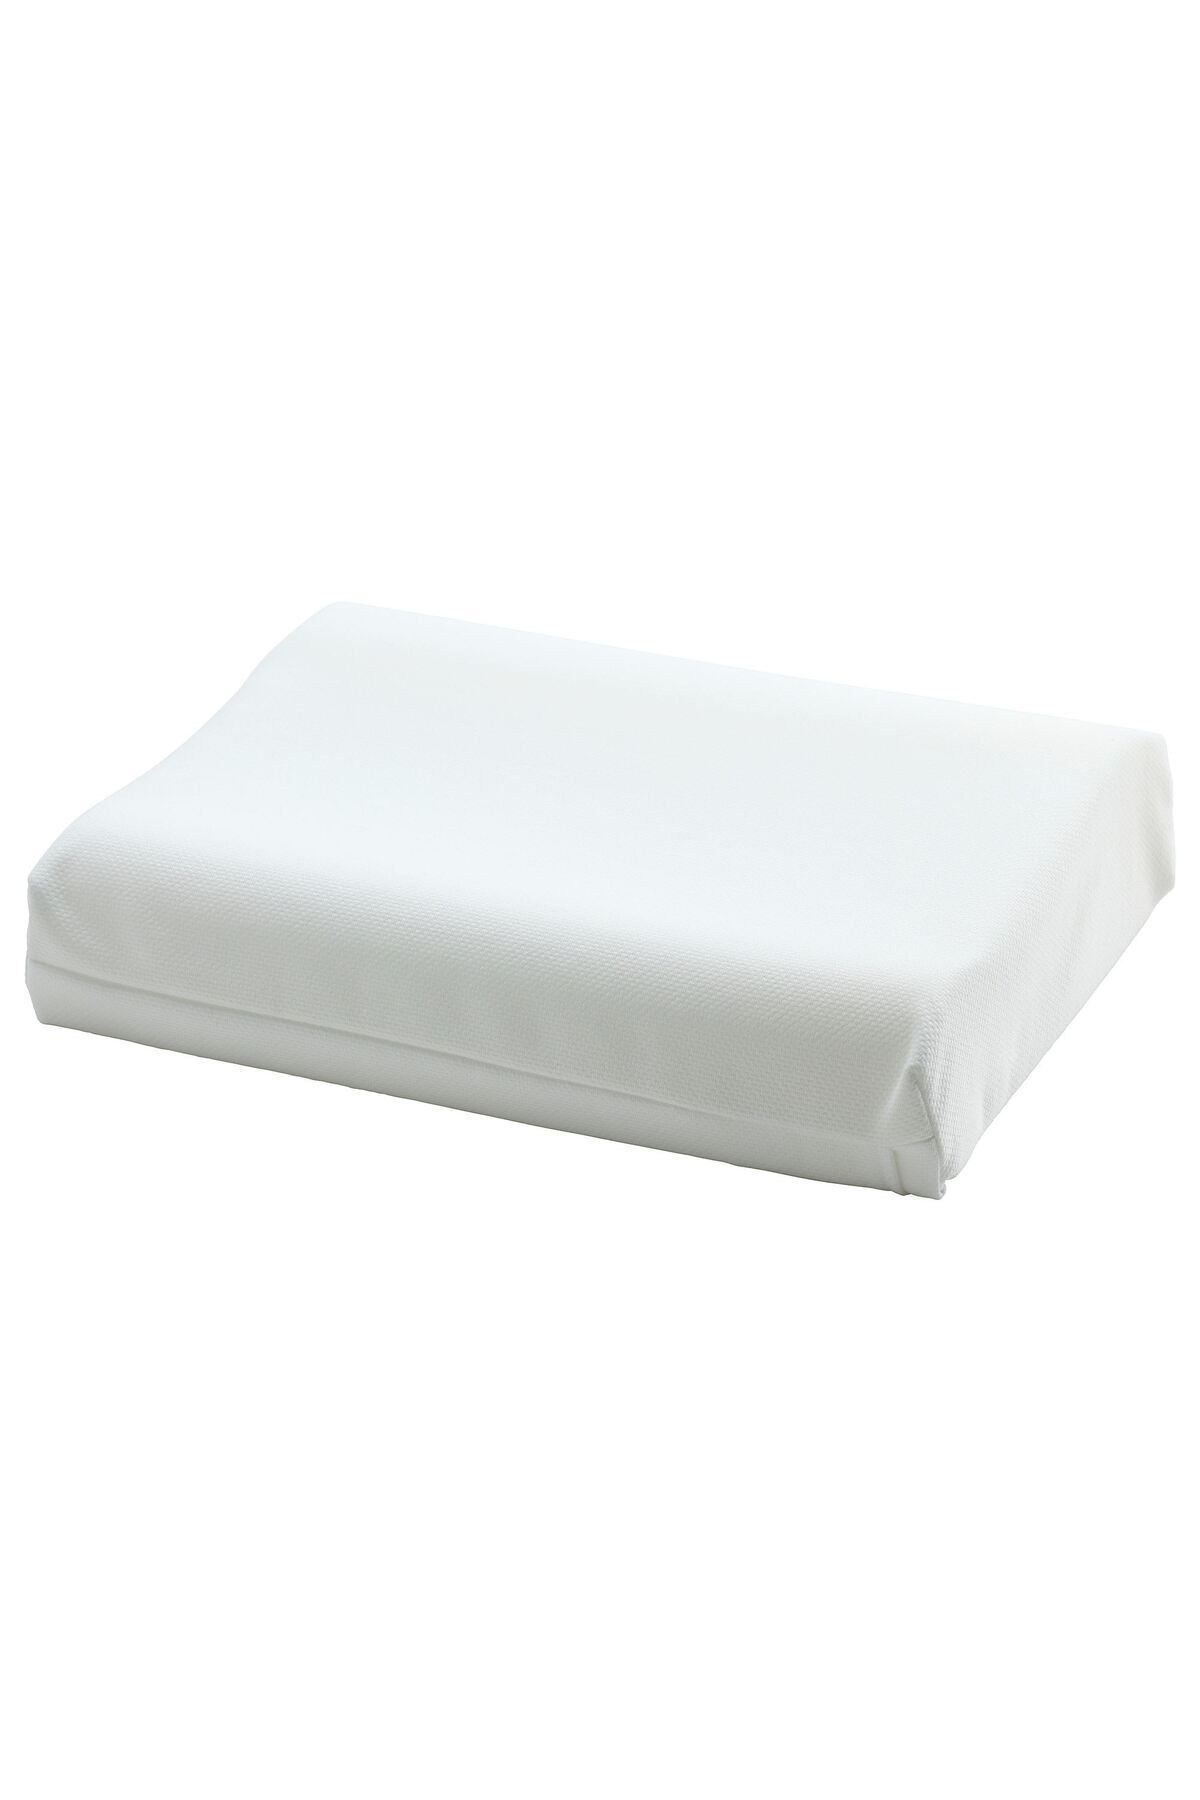 IKEA PAPEGOJBUSKE ergonomik yastık, beyaz, 33x45 cm